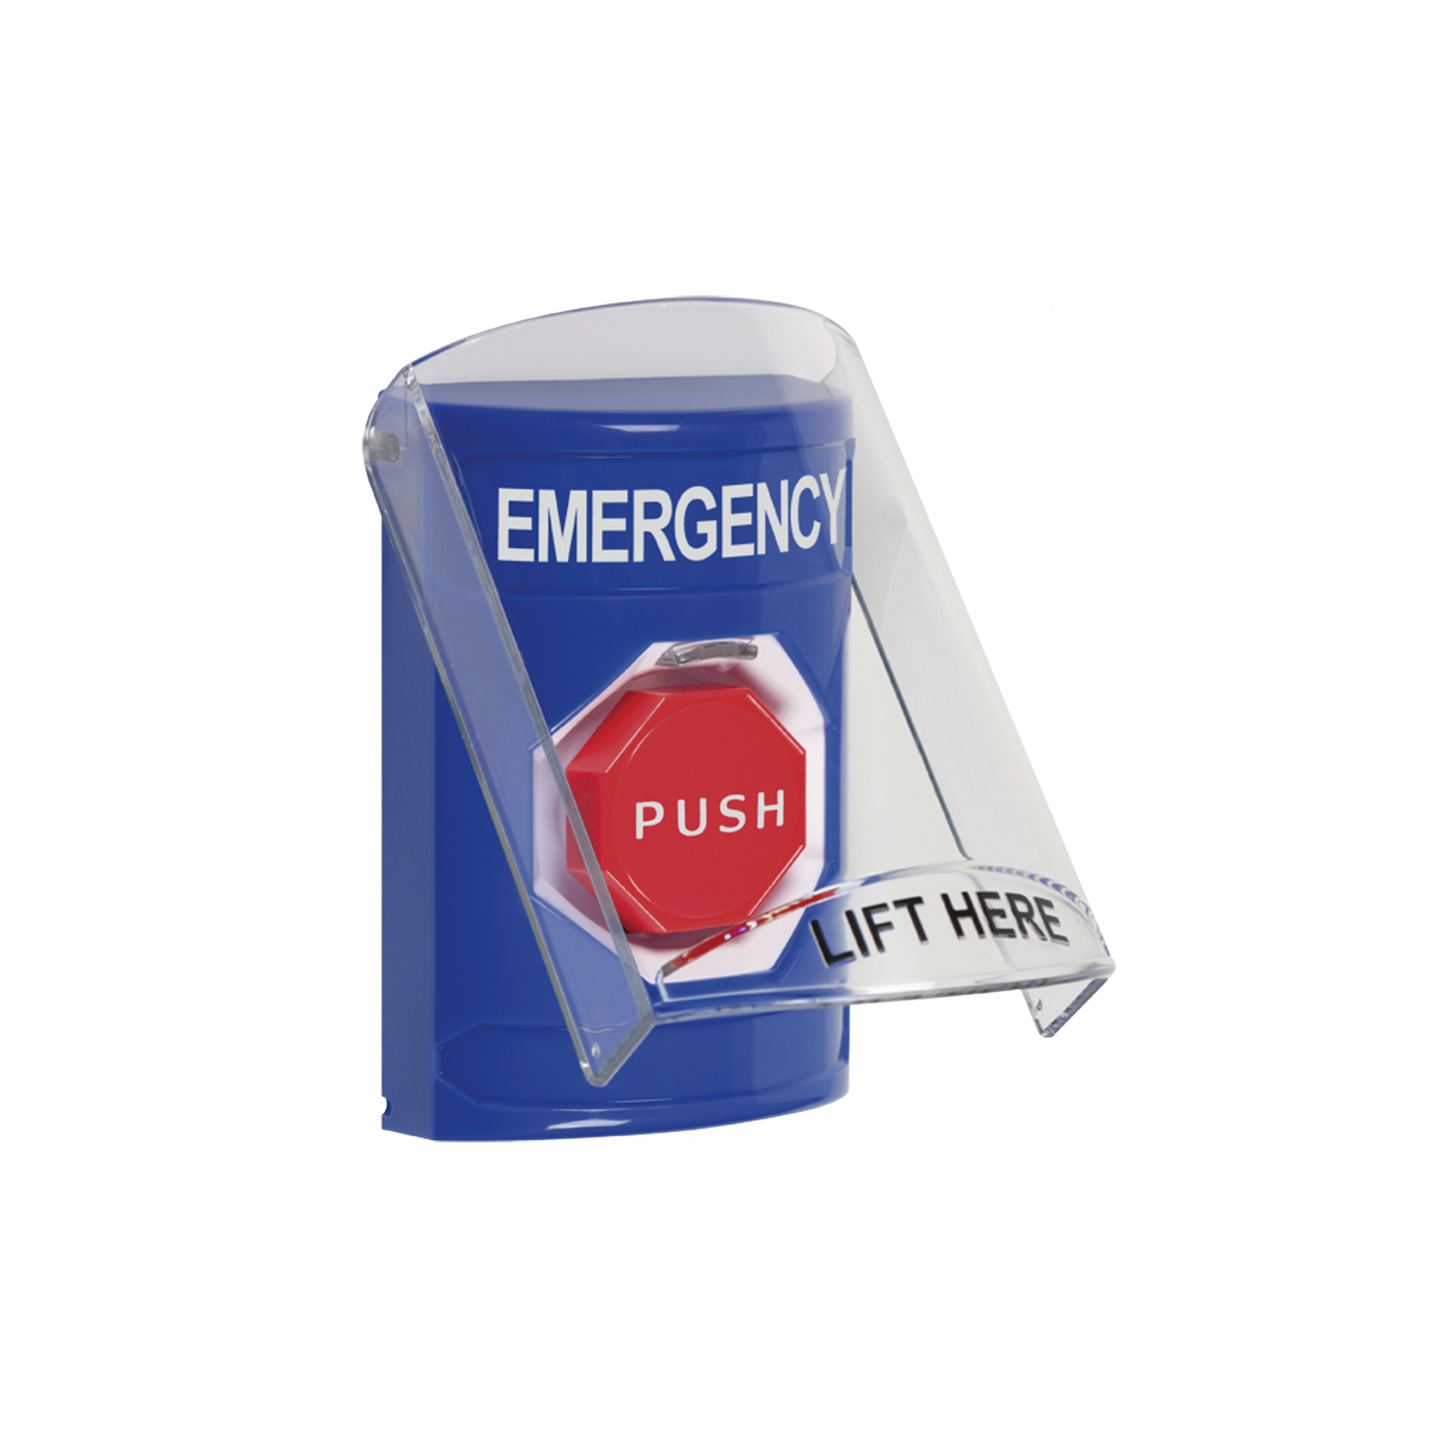 Botón de Emergencia en Ingles con Tapa Protectora de Policarbonato Súper Resistente, Restablecimiento con Llave y Sirena